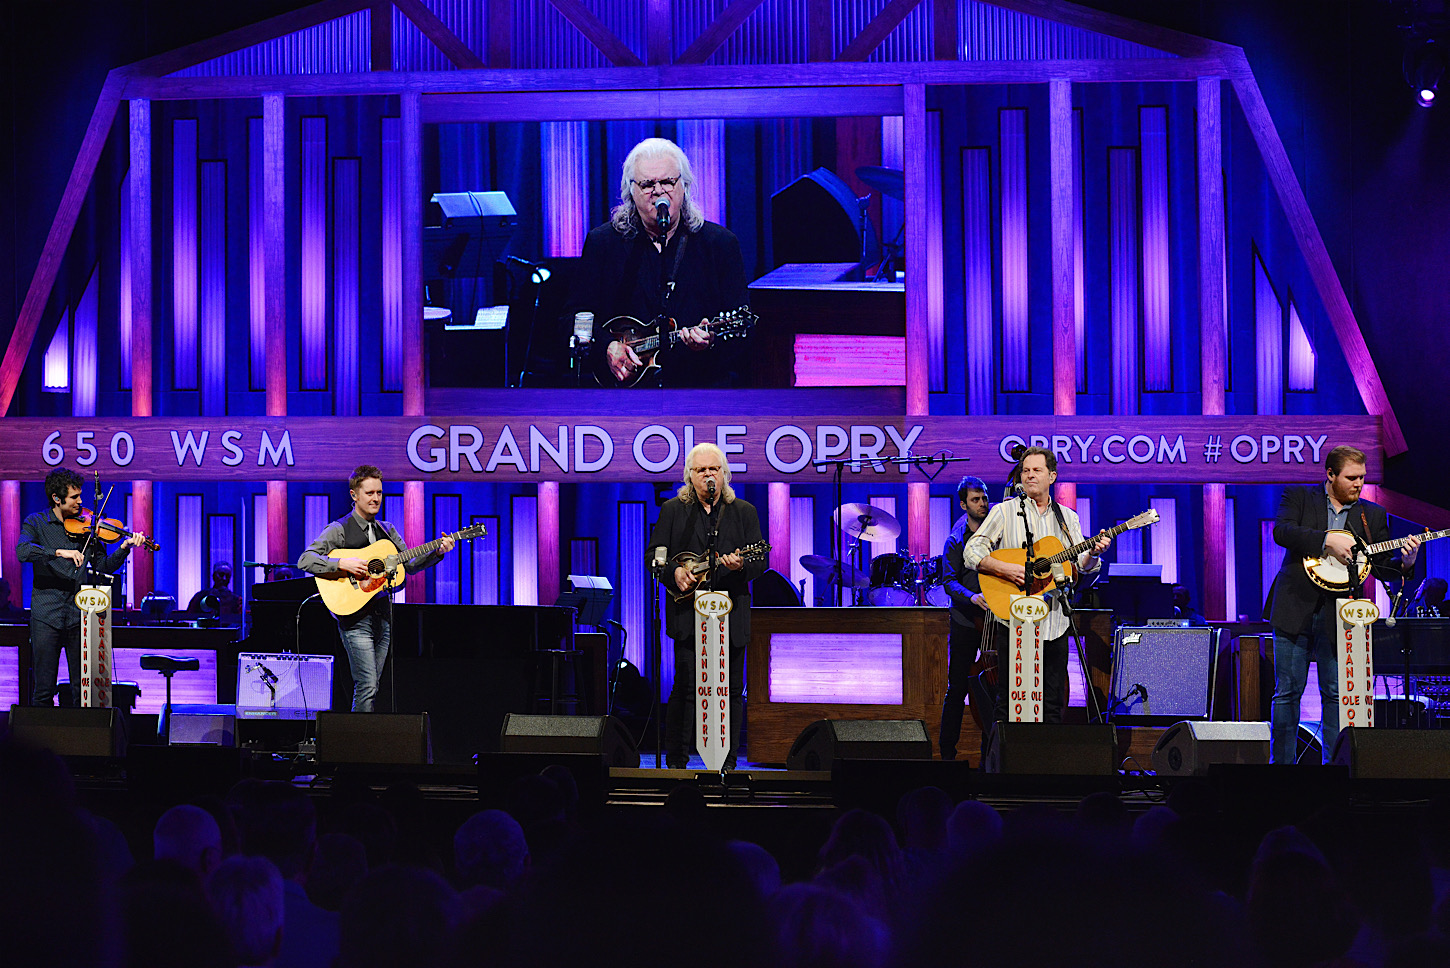 Die Live-Radioshow Grand Ole Opry mit einem Auftritt des Bluegrass-Stars Ricky Skaggs - die Show geht online weiter